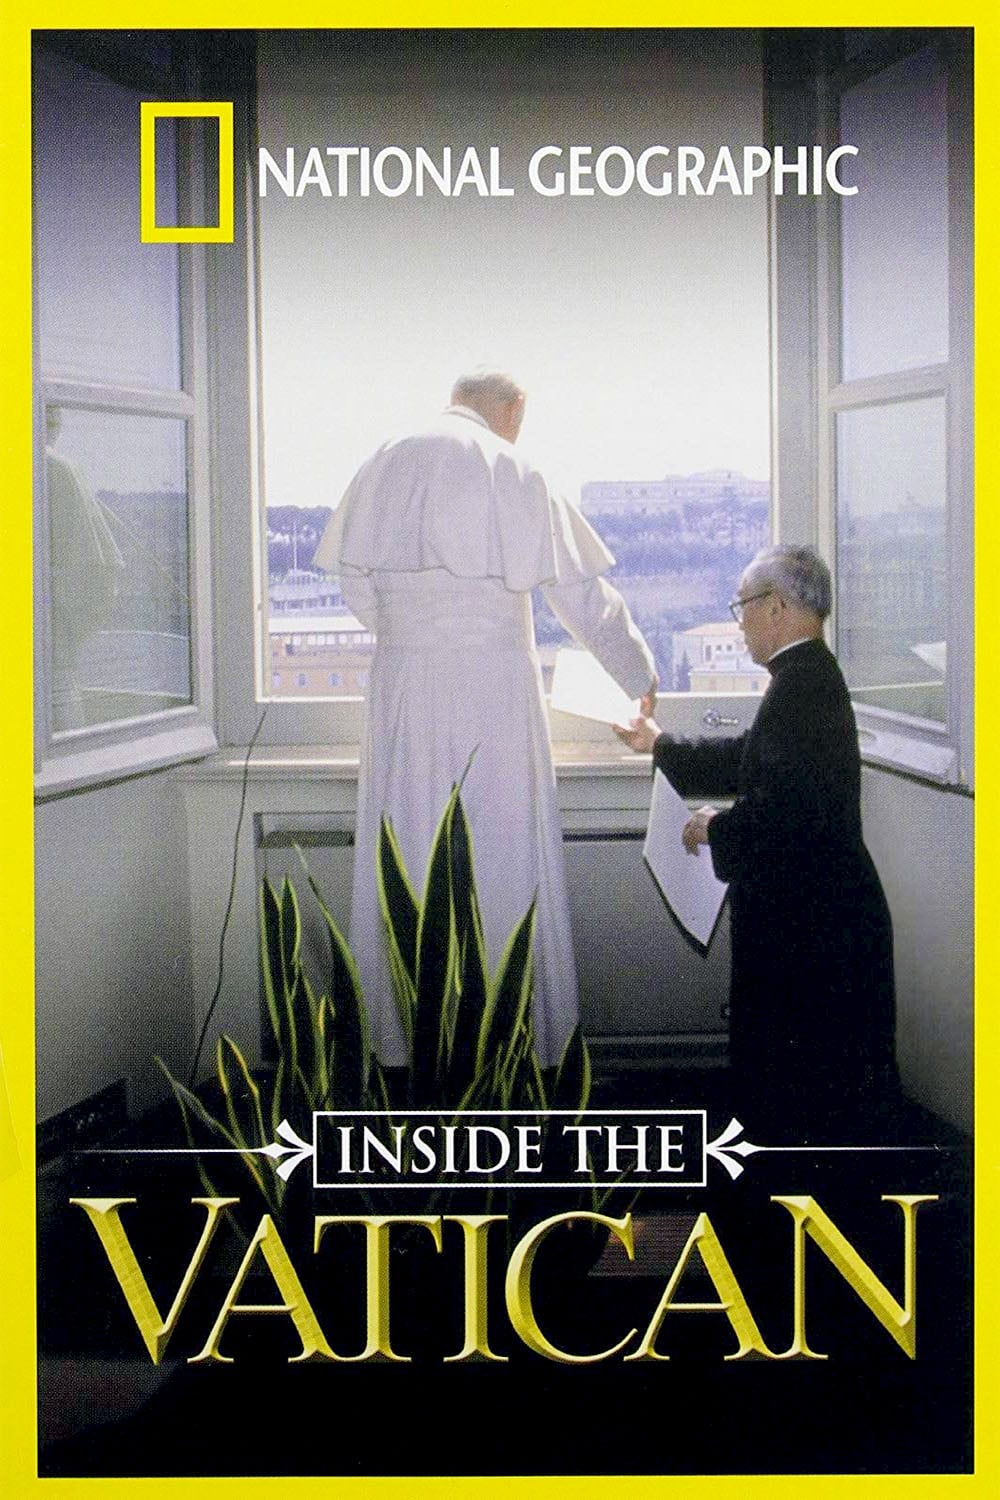 National Geographic : Les Coulisses du Vatican (2001)